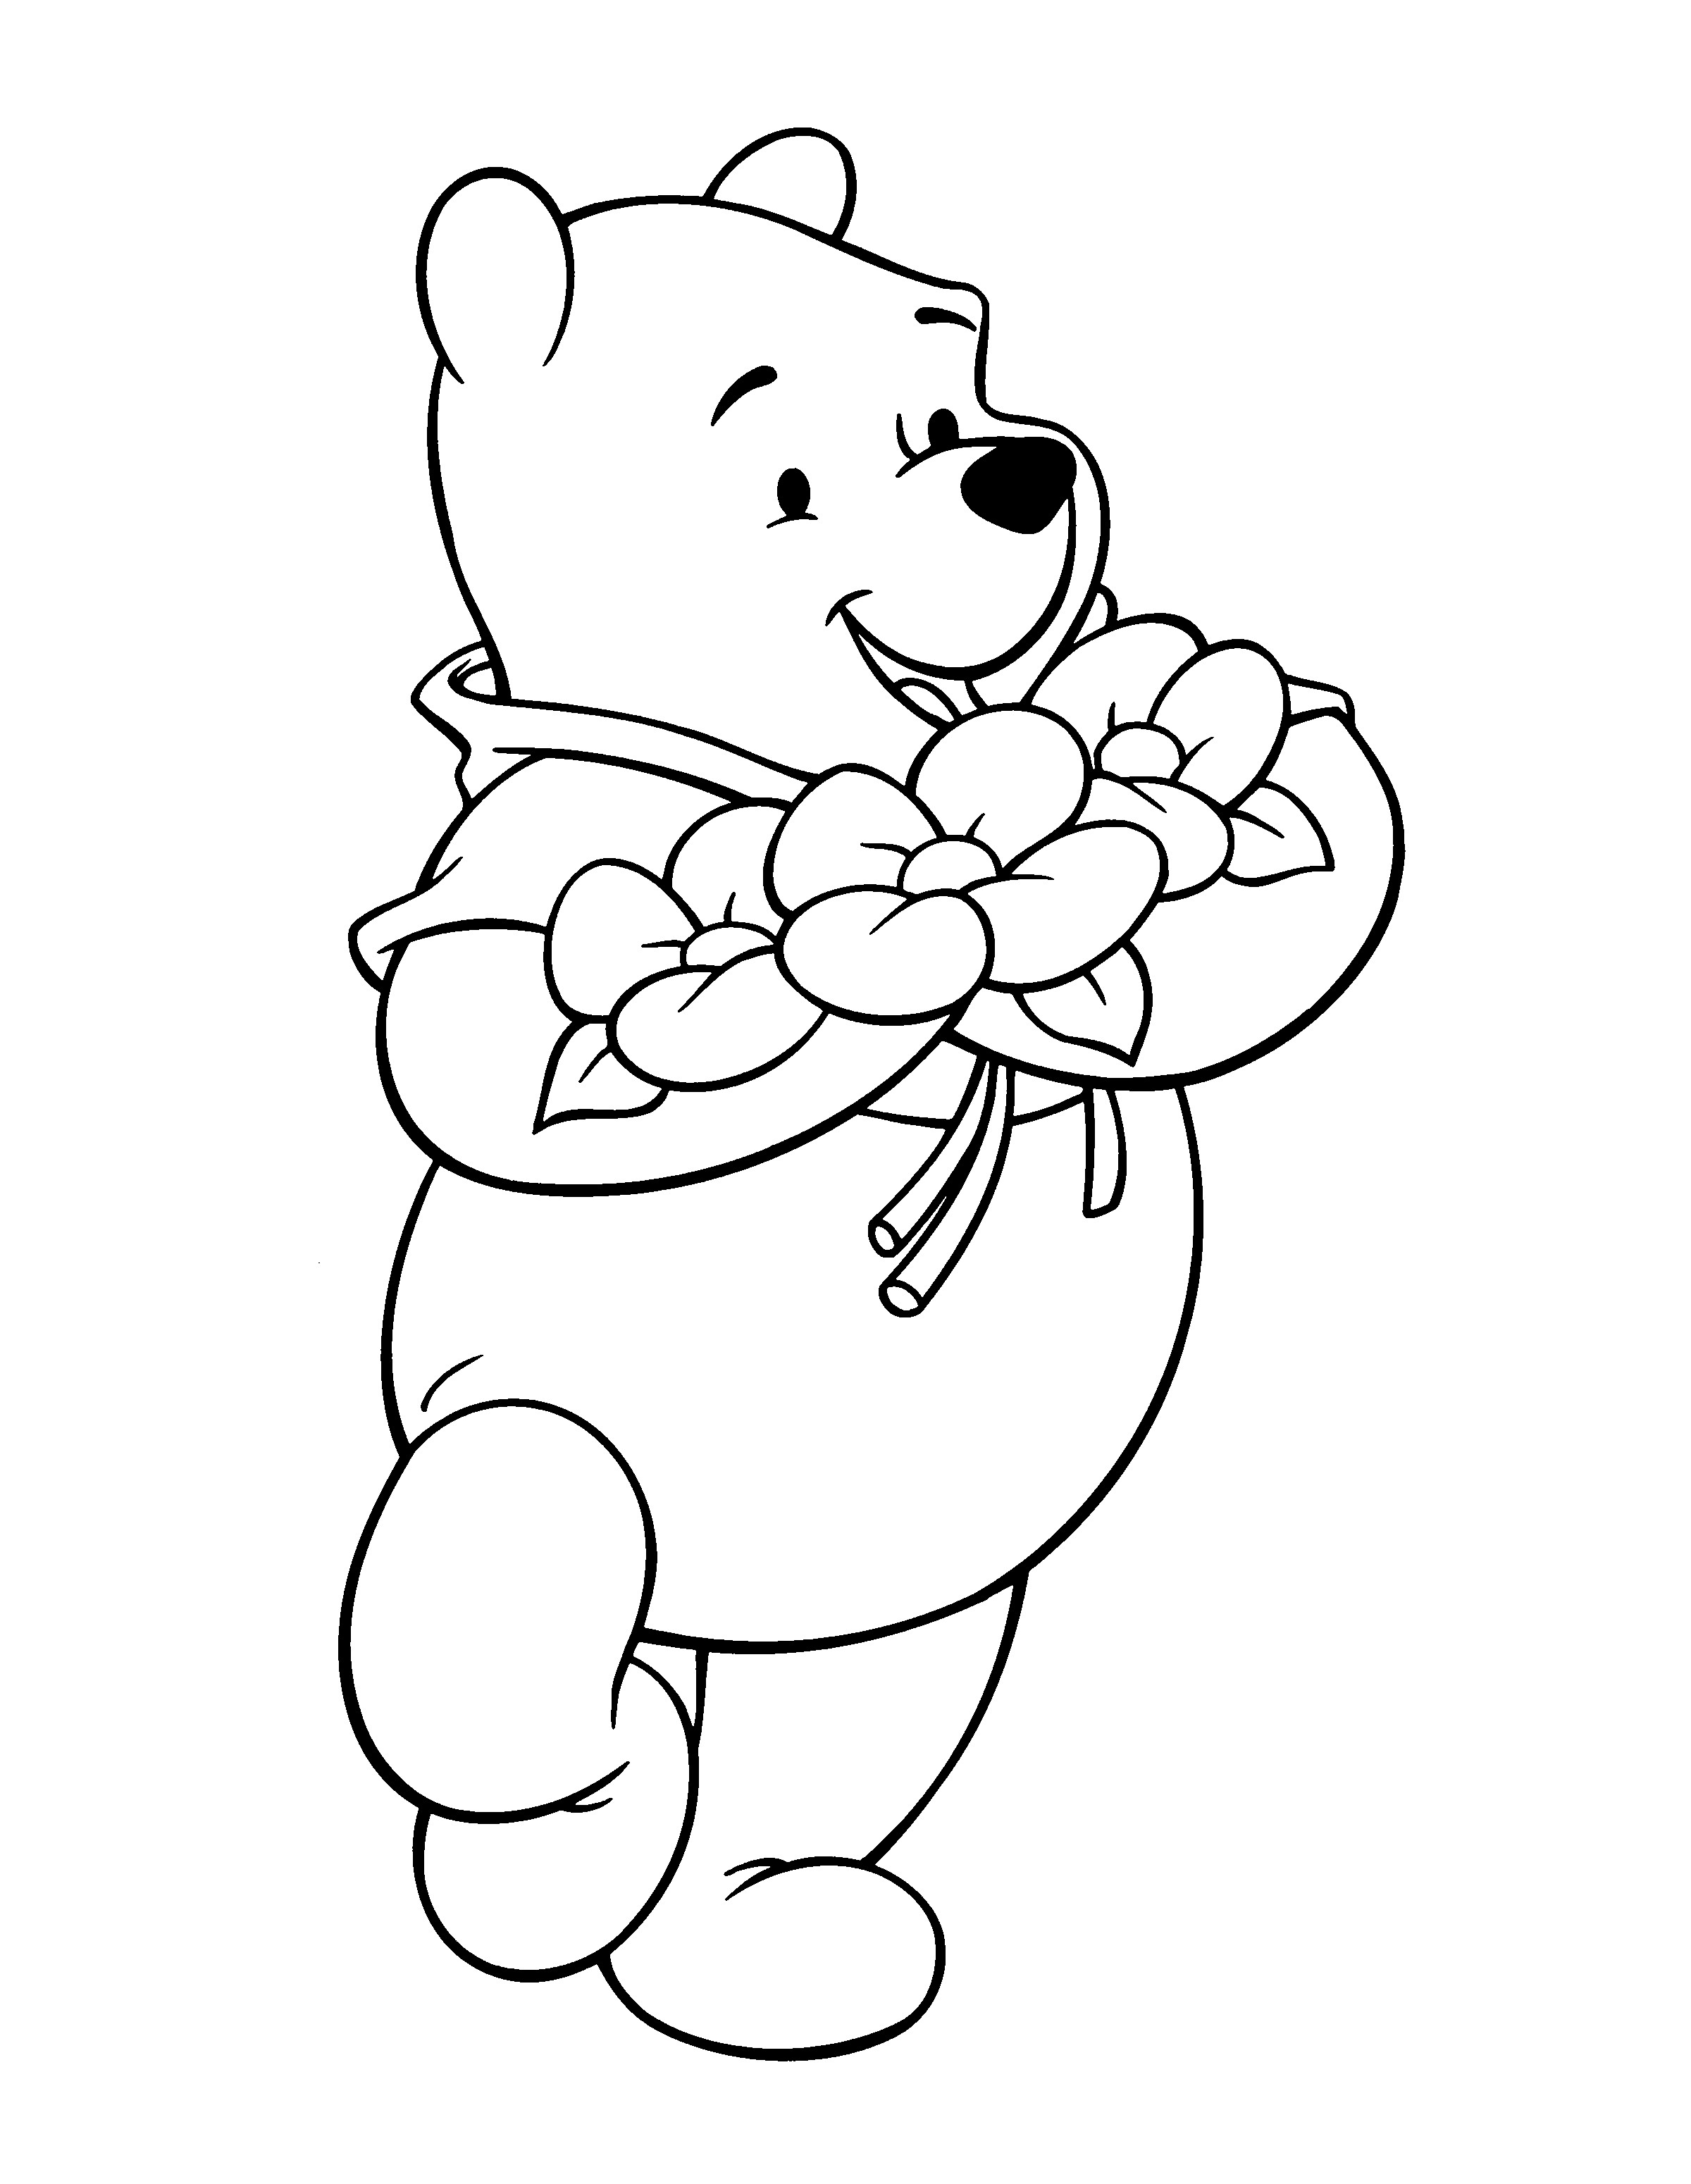 Ausmalbilder Winnie Pooh
 Ausmalbilder Disney Zum Ausdrucken Malvorlagentv